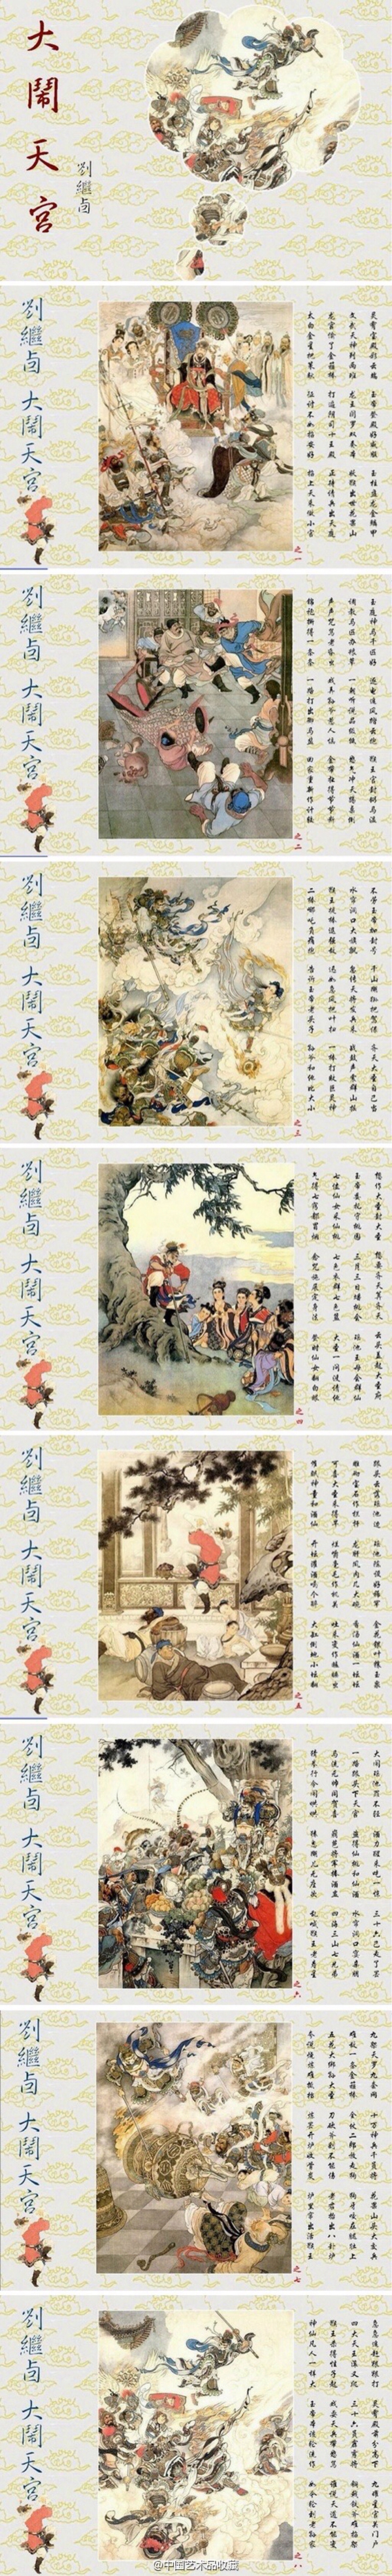 【 刘继卣 《大闹天宫》 】此组工笔重彩画一共八幅,包括:"降石猴禀议图片